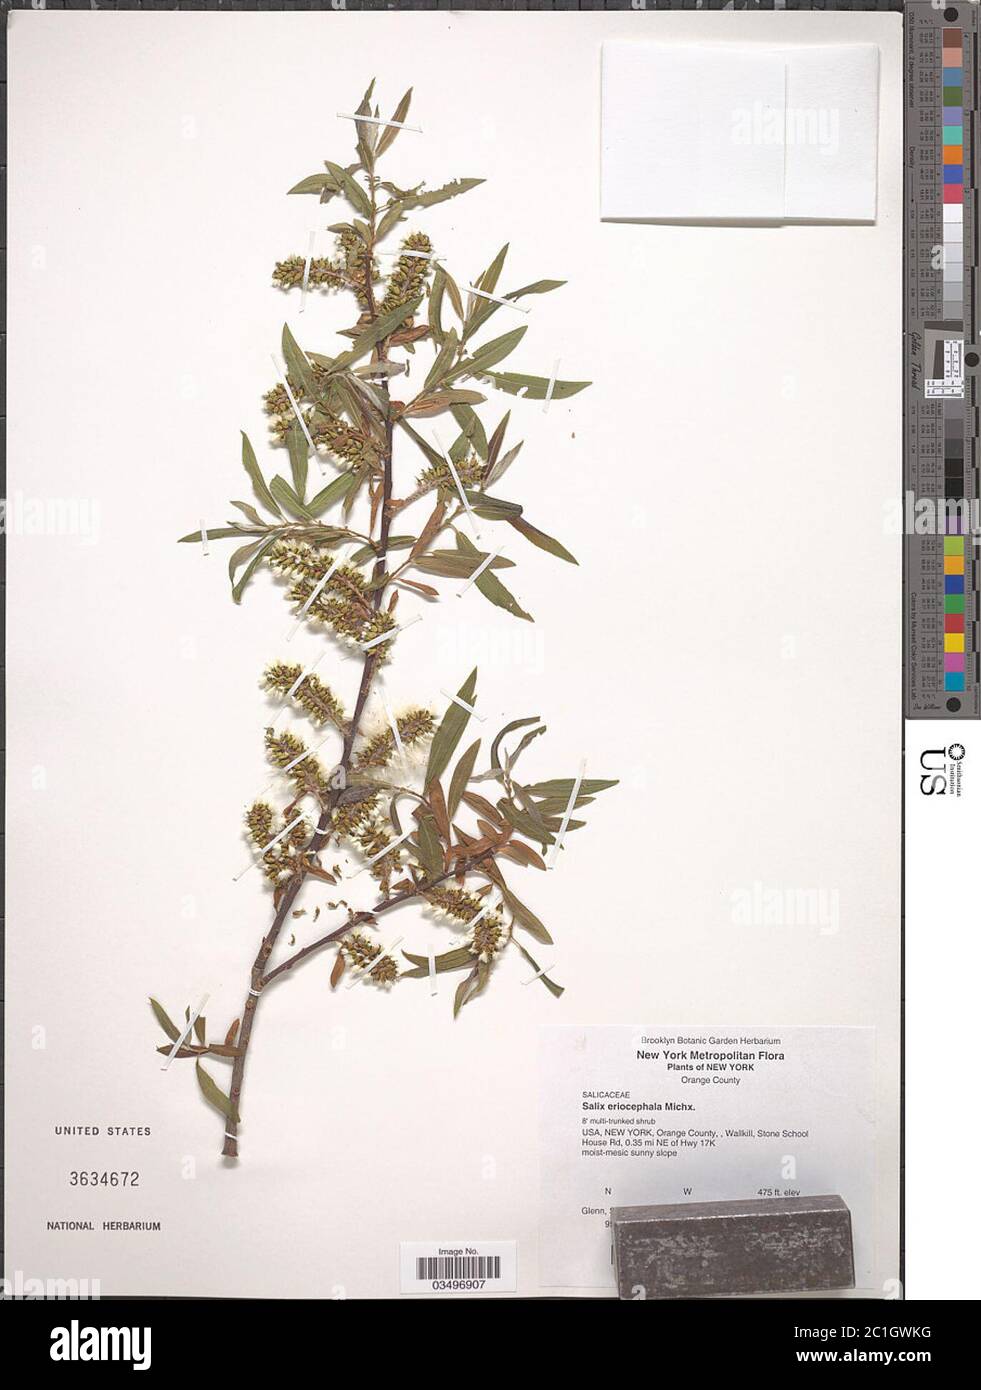 Salix eriocephala Michx Salix eriocephala Michx. Stock Photo